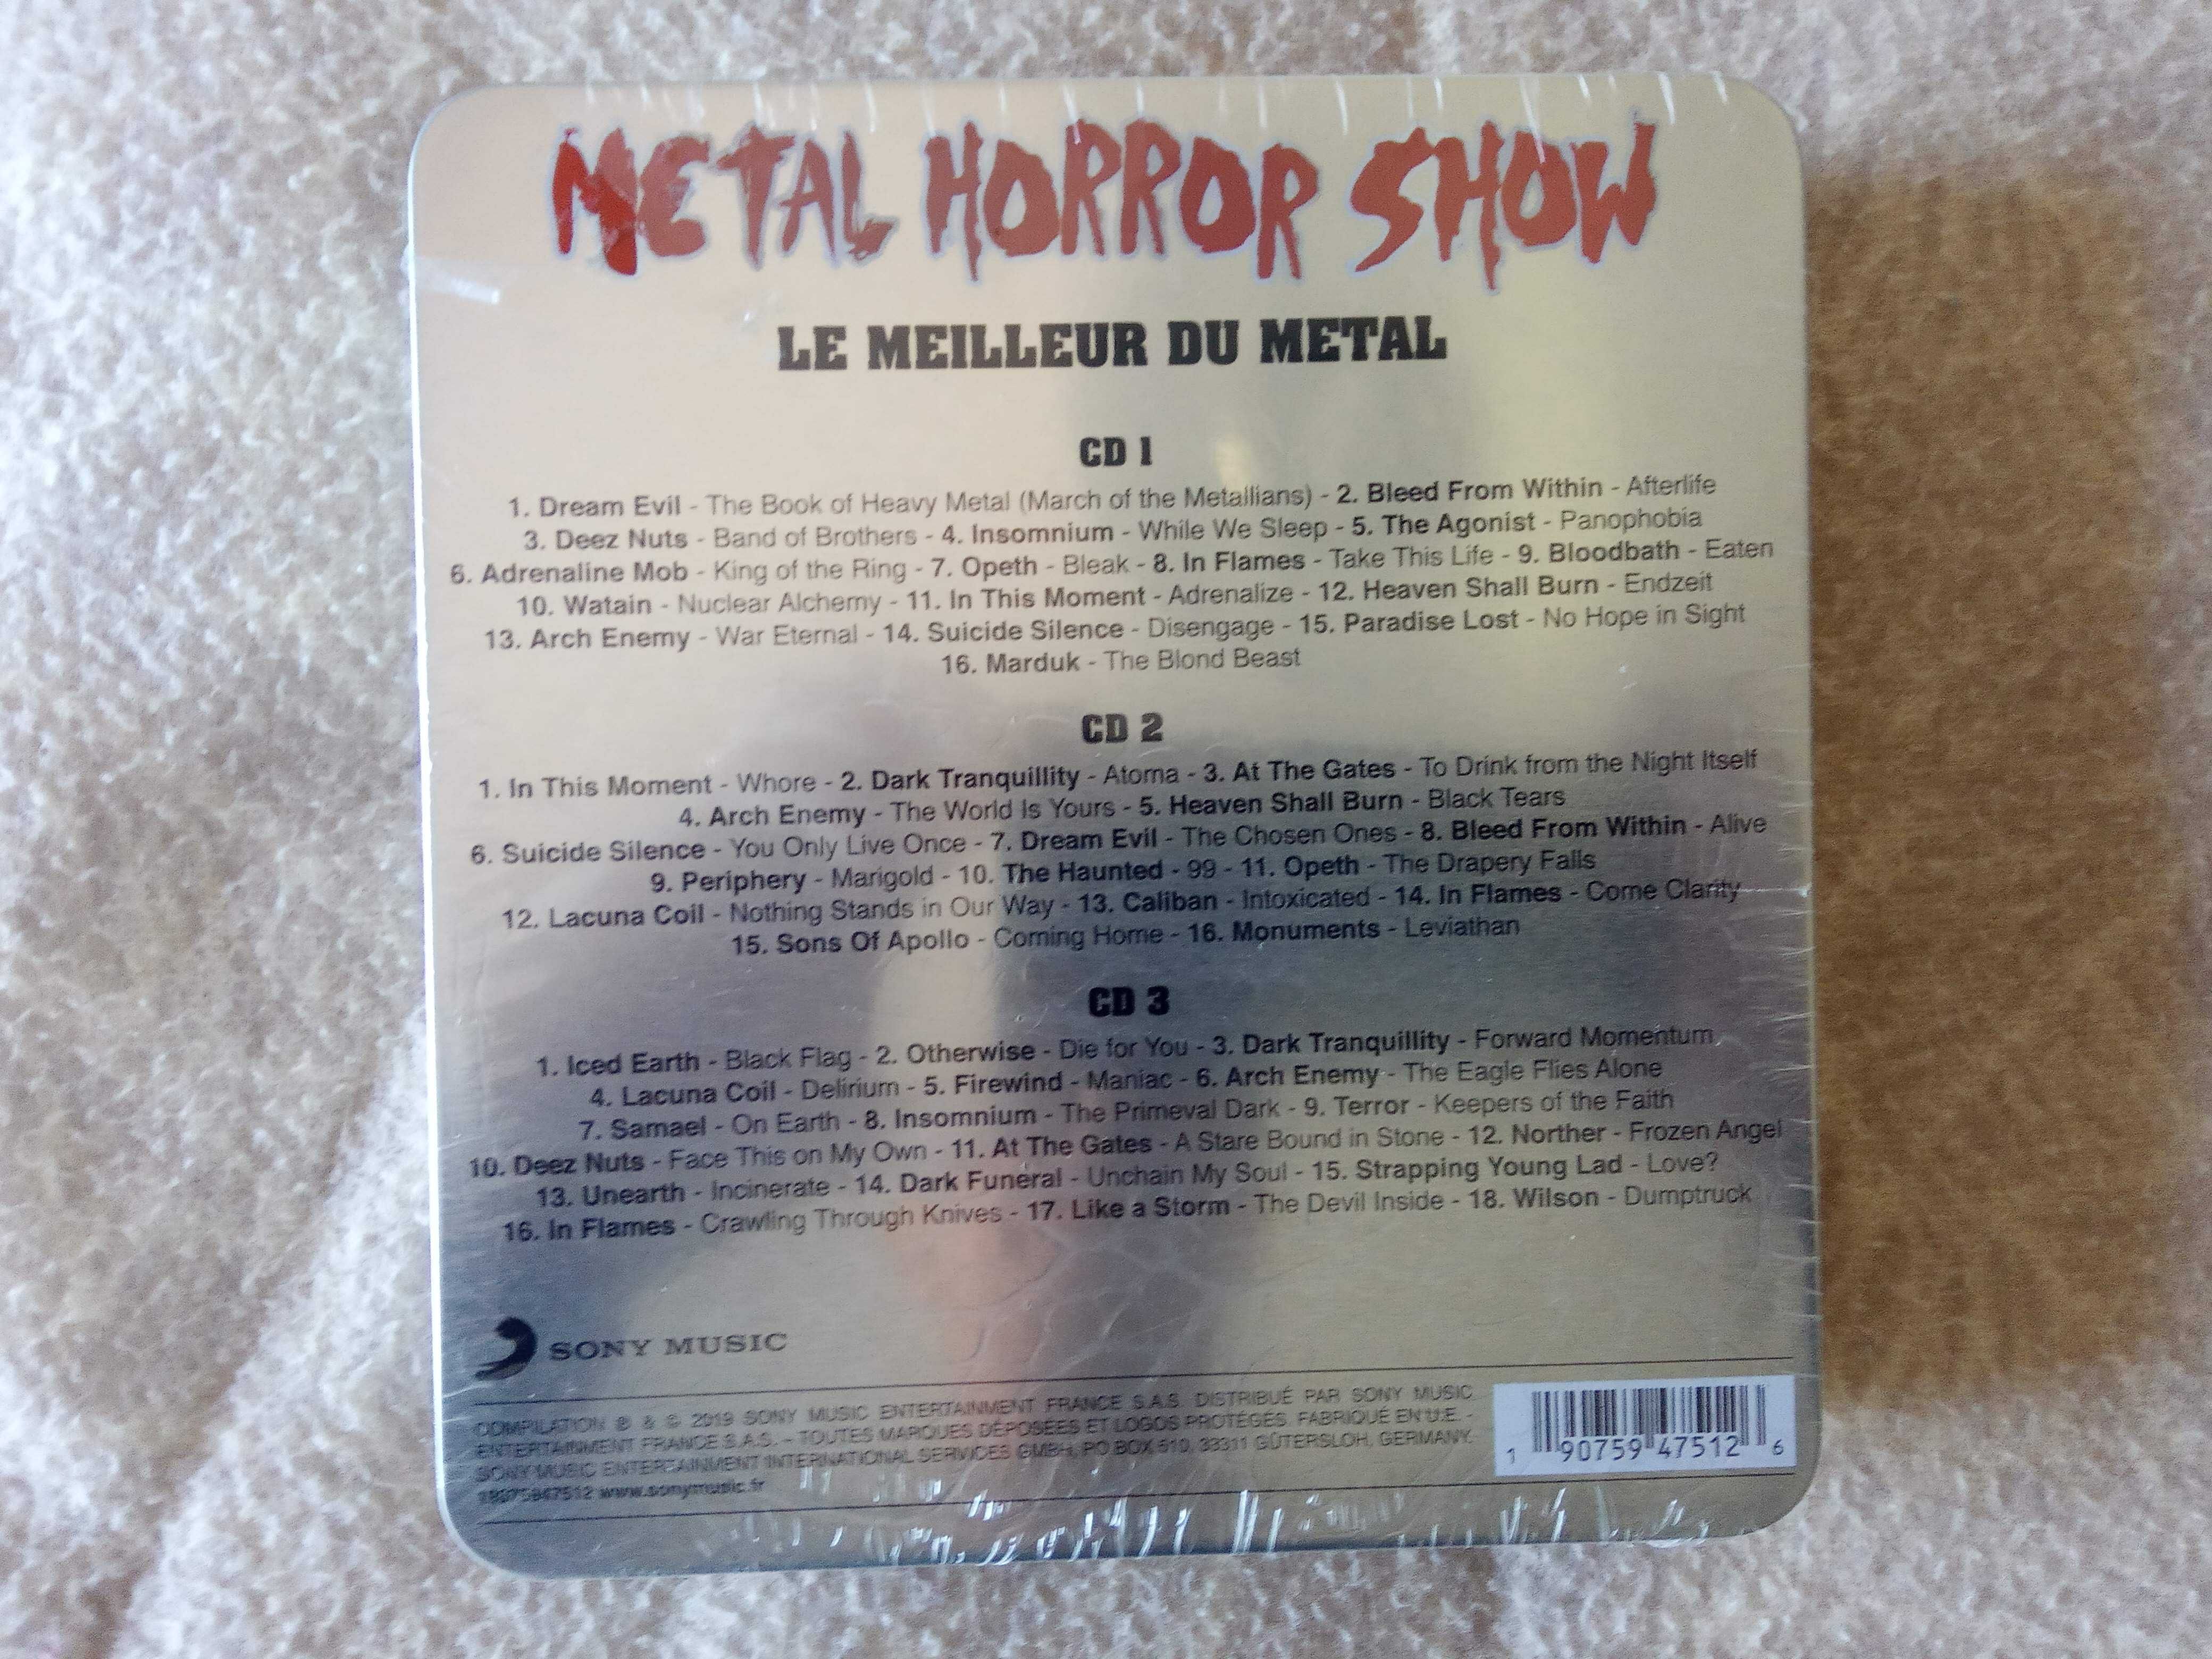 Metal Horror Show (Le Meilleur du Metal) / Triplo CD